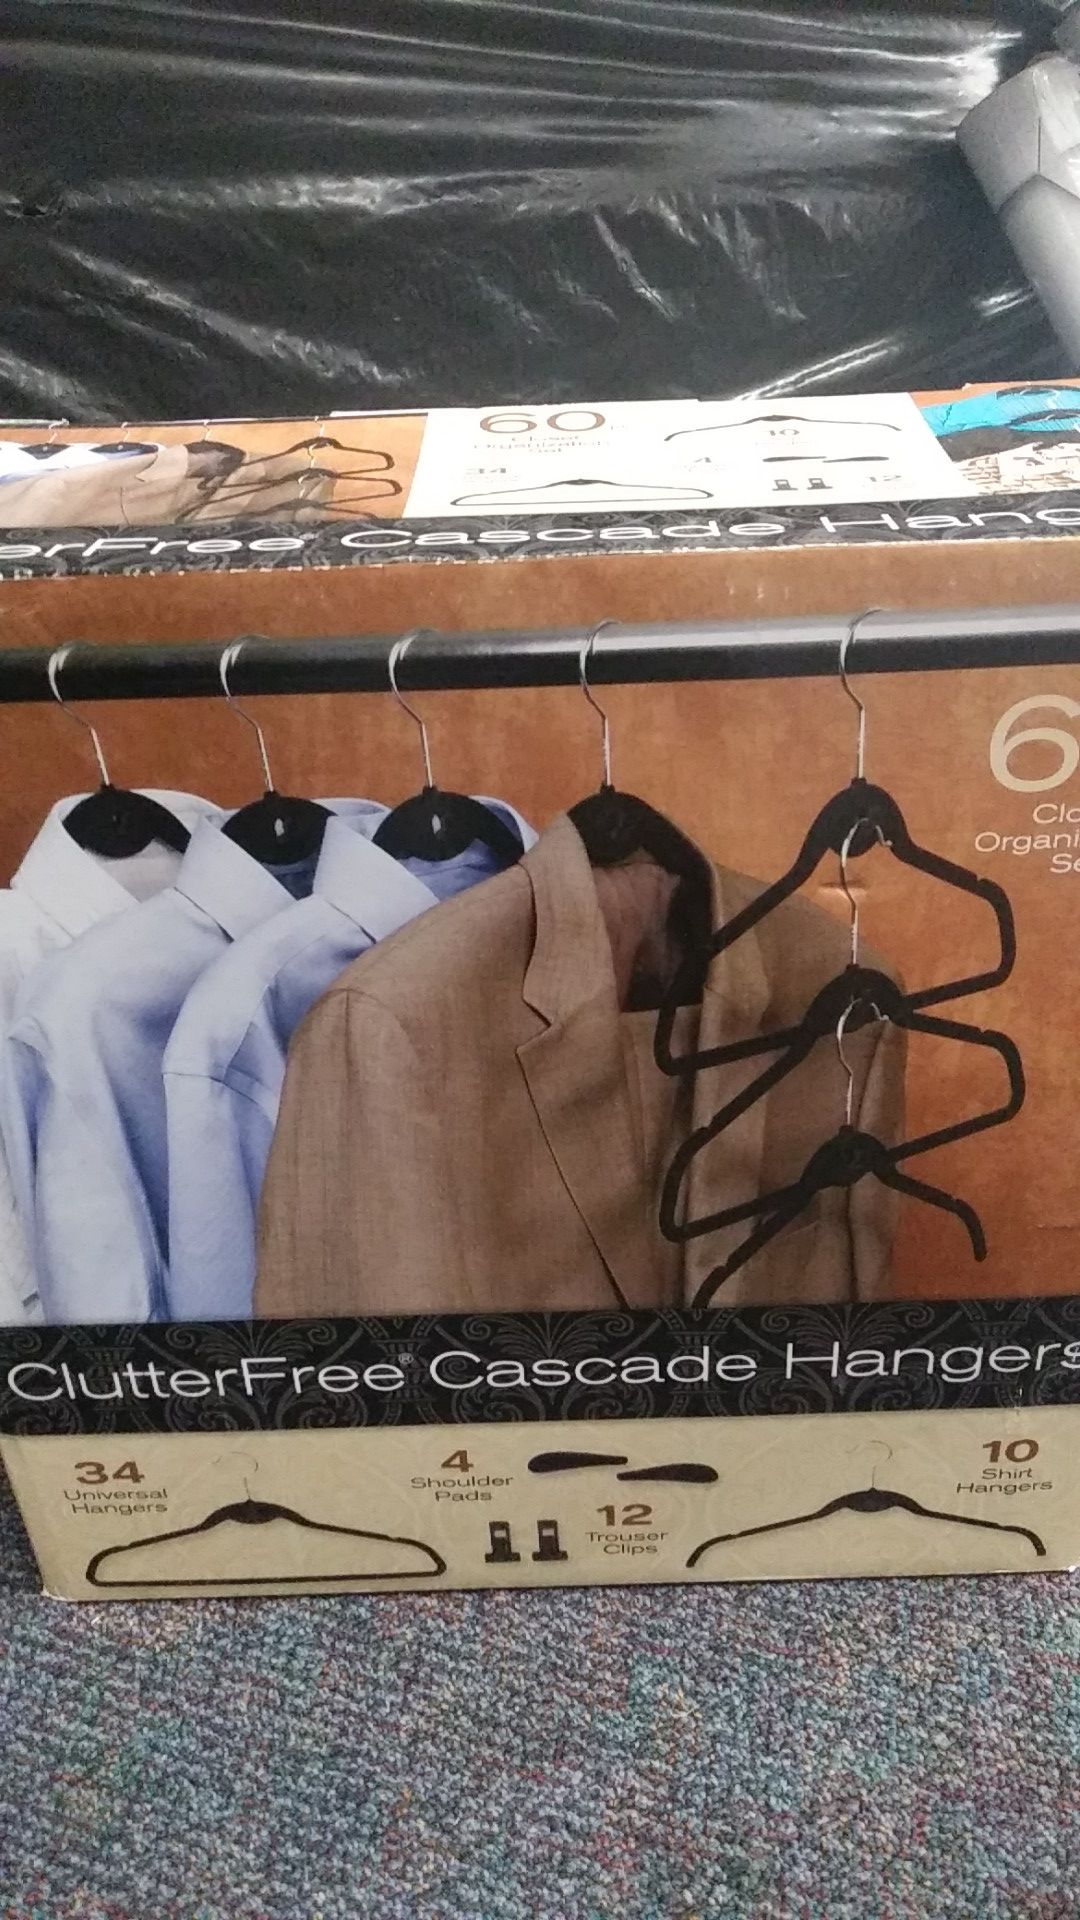 Clutter-free Cascade hangers set